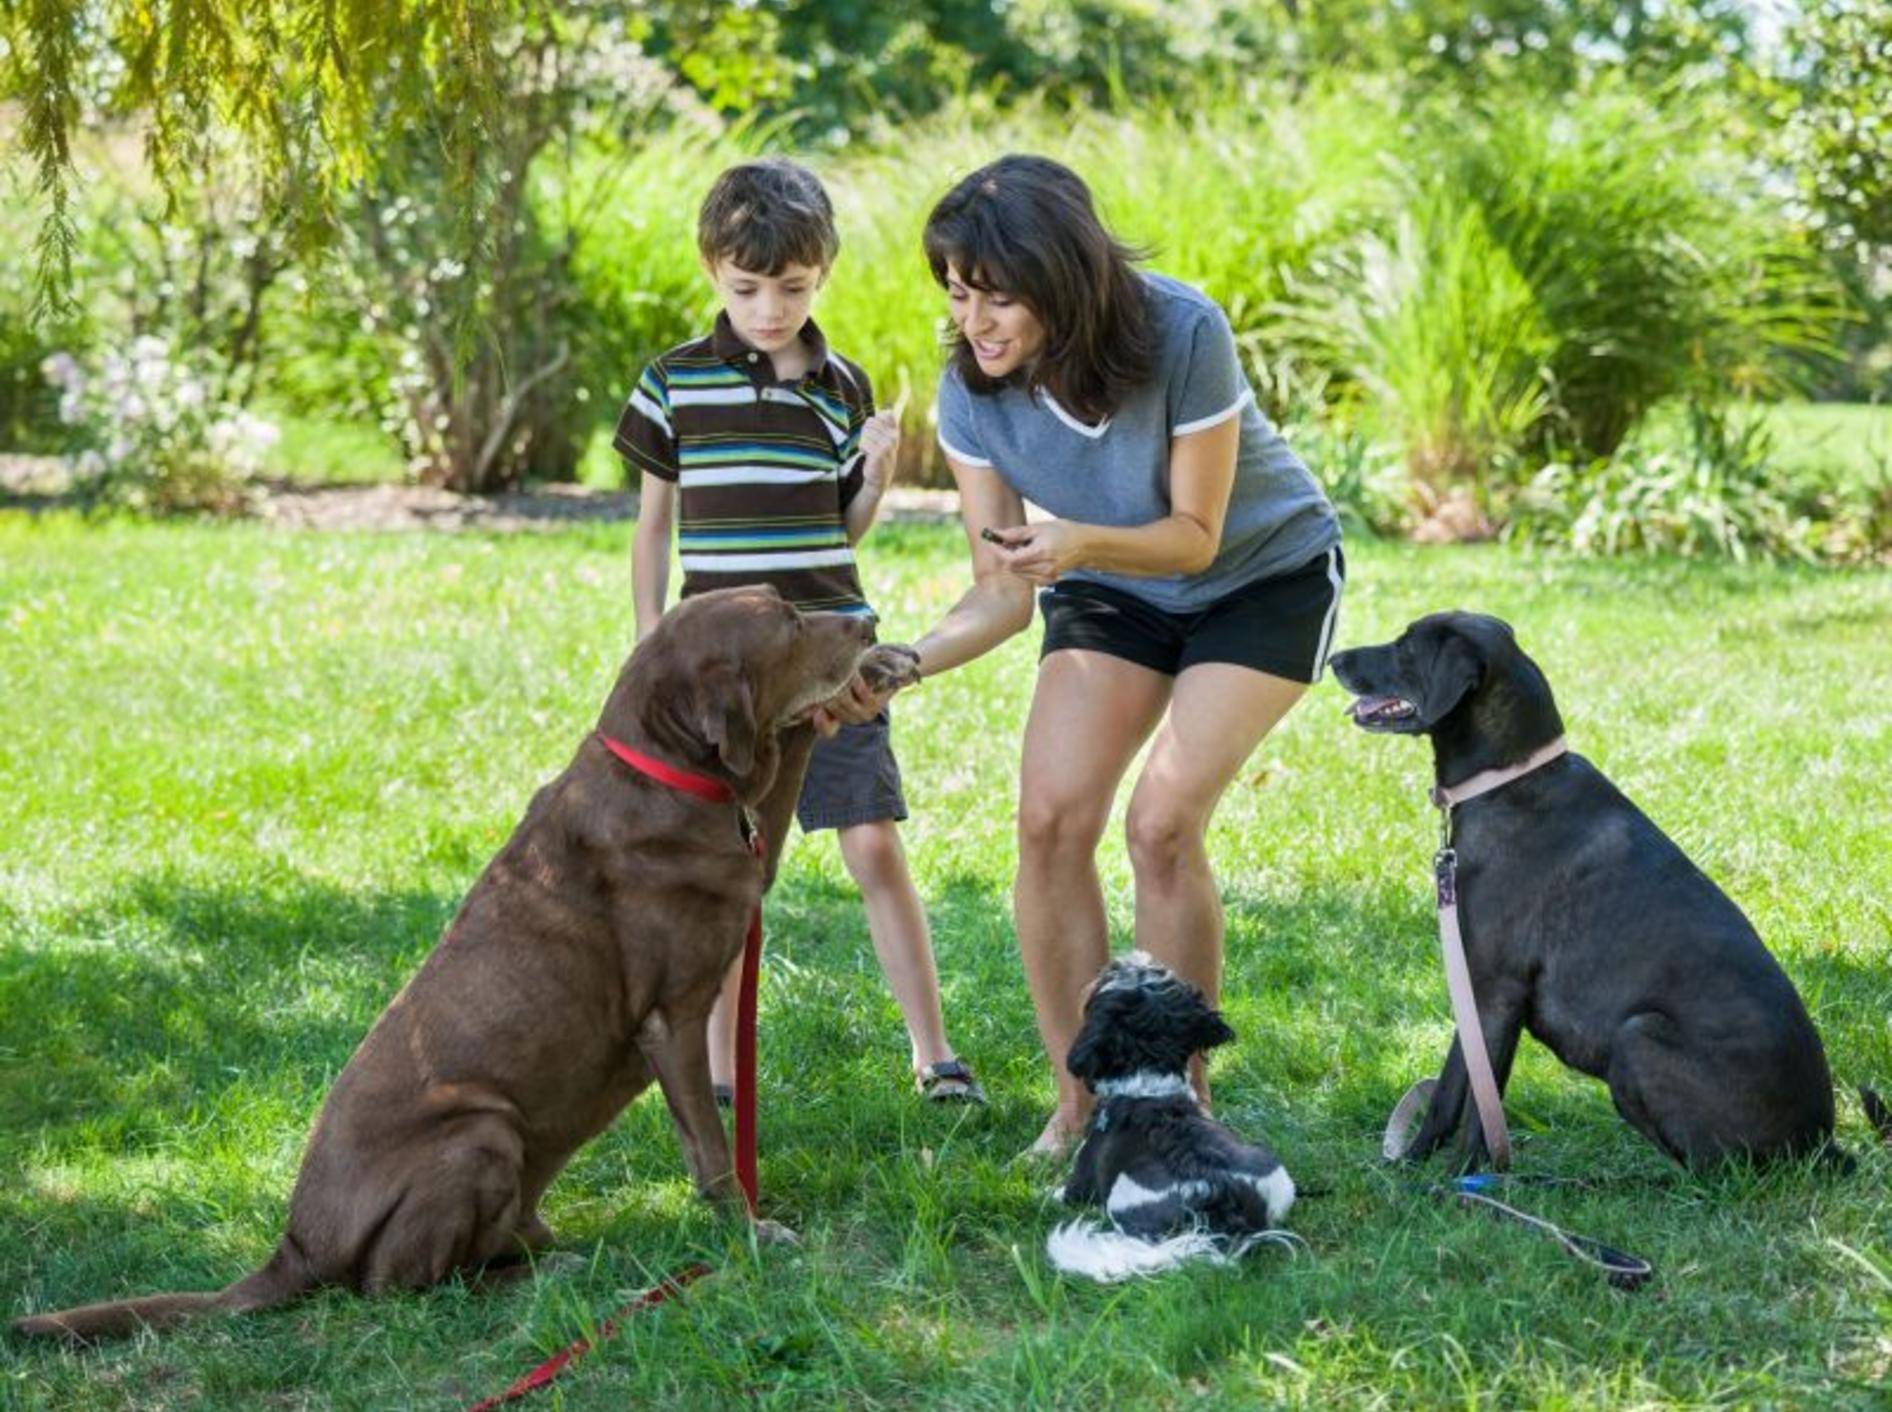 Hundetraining mit Clicker ist ein guter Start für eine harmonische Beziehung — Bild: Shutterstock / eurobanks